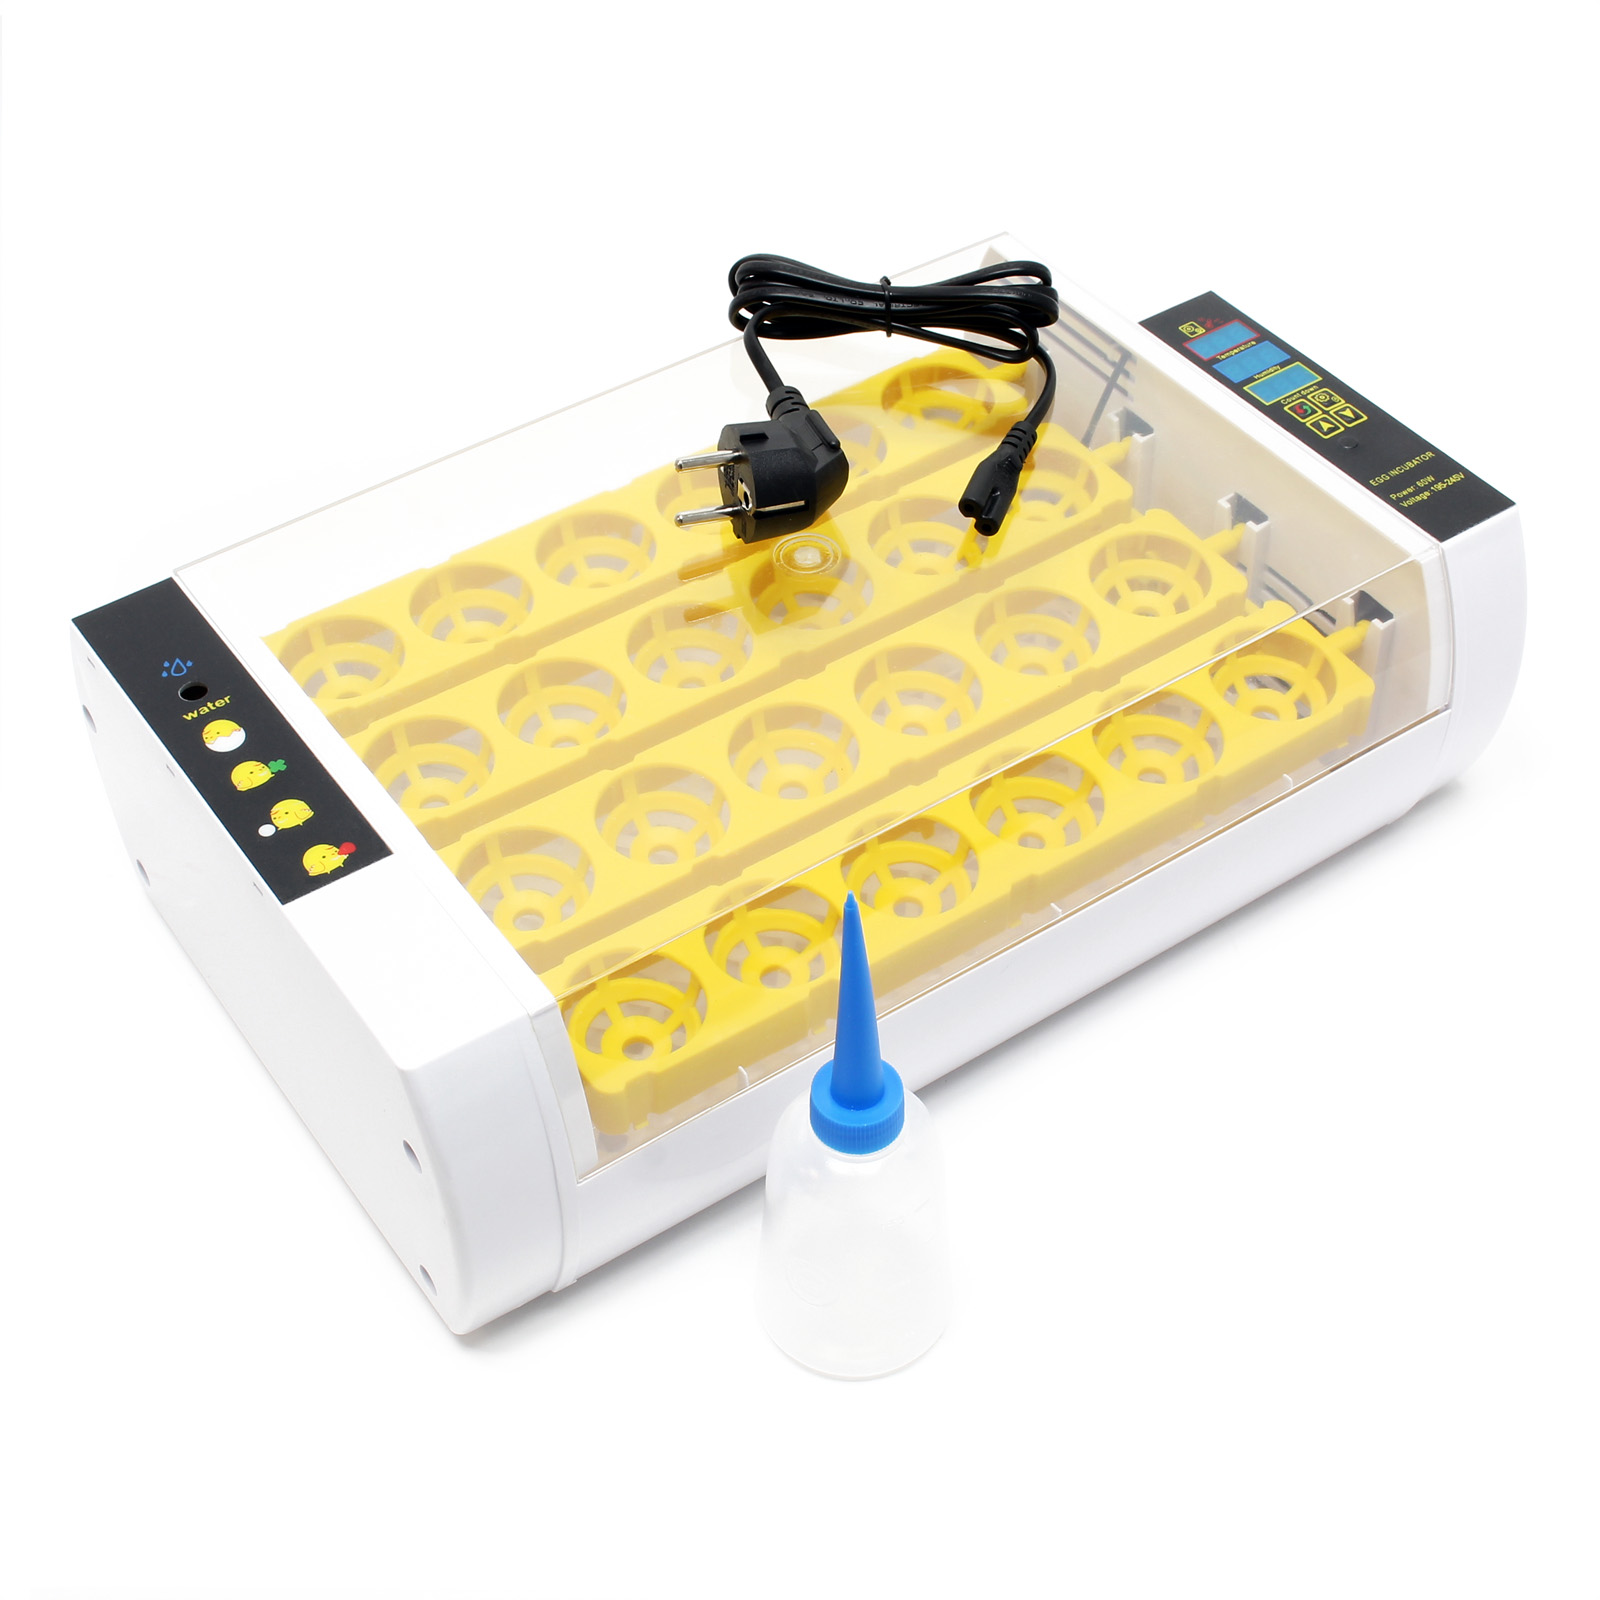 Kacsoo Eierinkubator Automatischer Eier inkubator für 24 Eier Kleine Geflügel luken Automatische Temperaturfeuchtigkeitsregelung Verwendet für Farm Experiment Lehre 